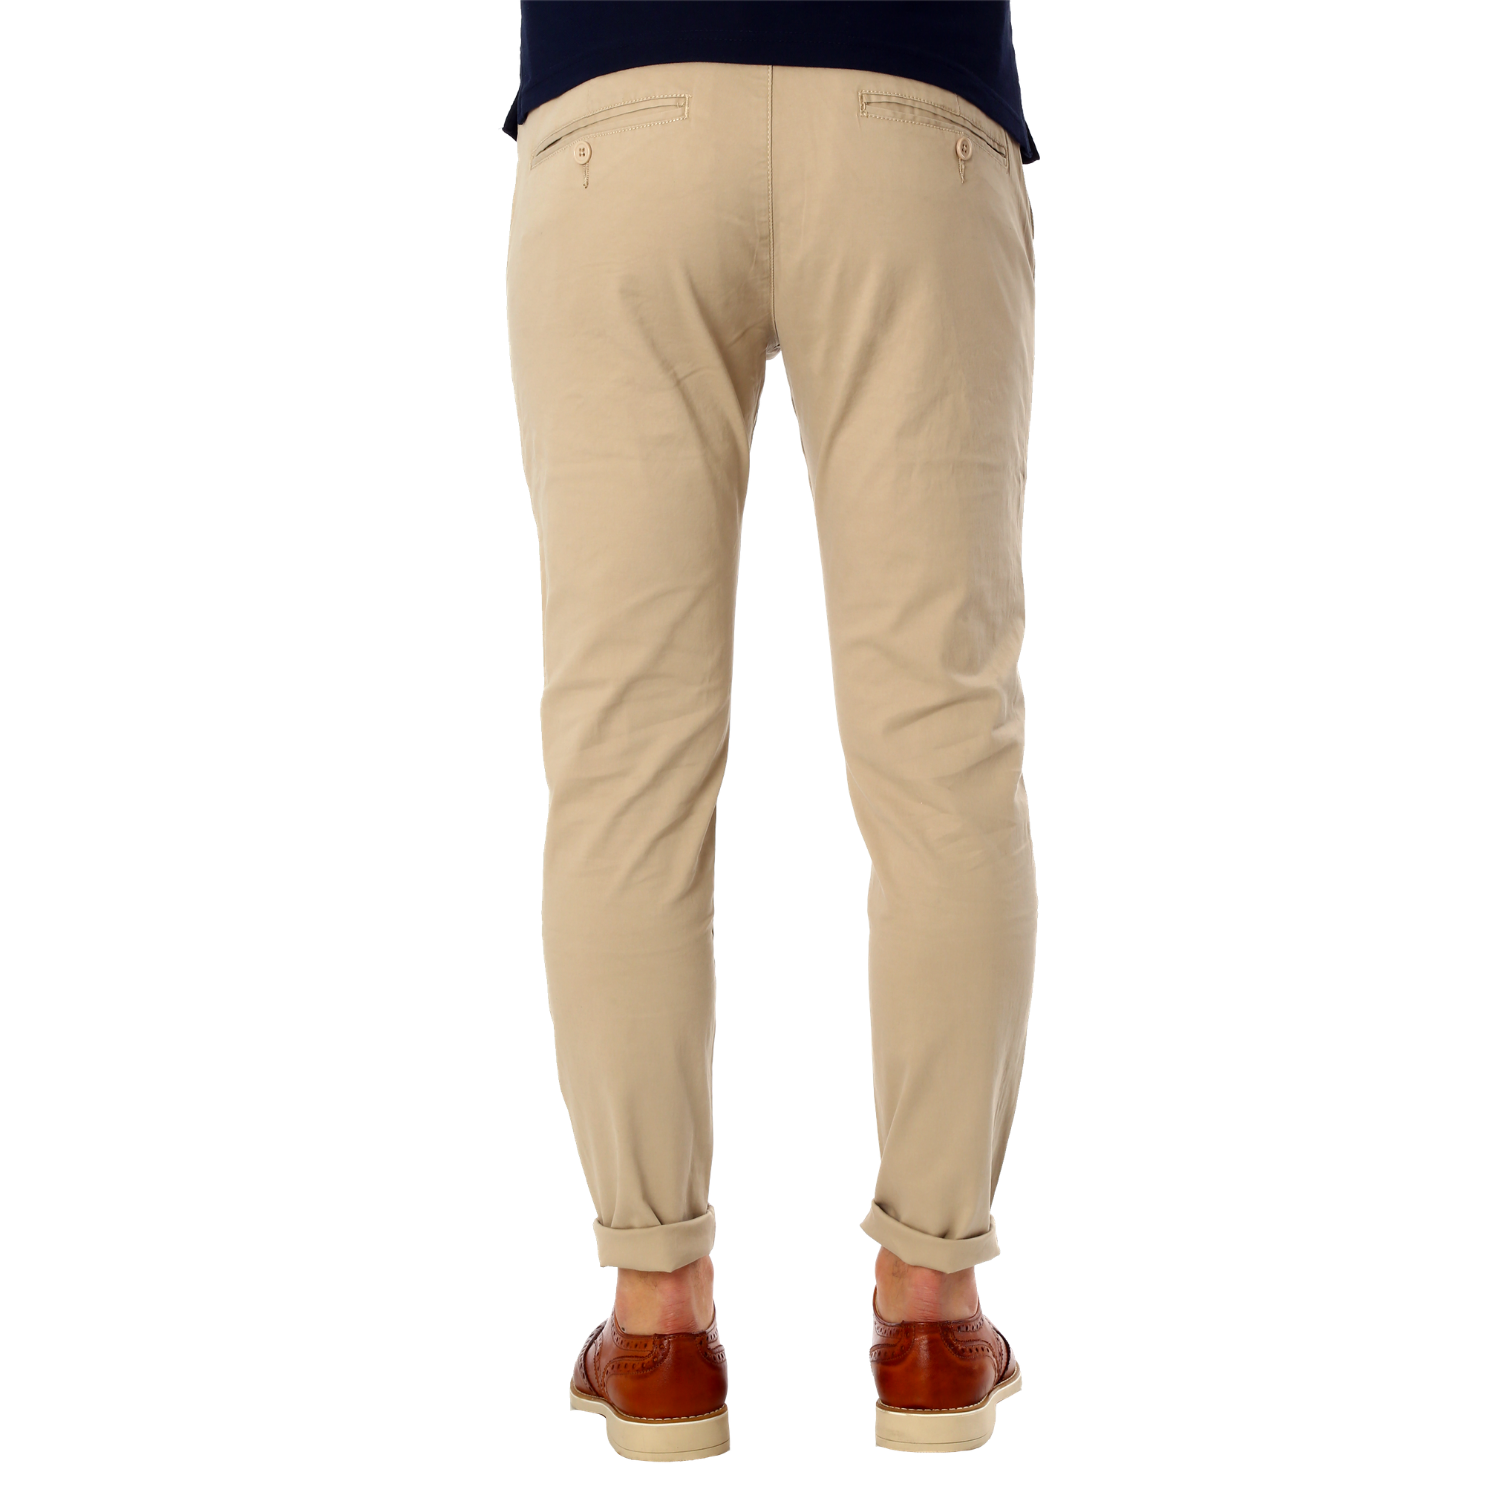 Pantaloni Uomo Cotone Chino Jeans SlimFit Casual Tasca America Beige esprez